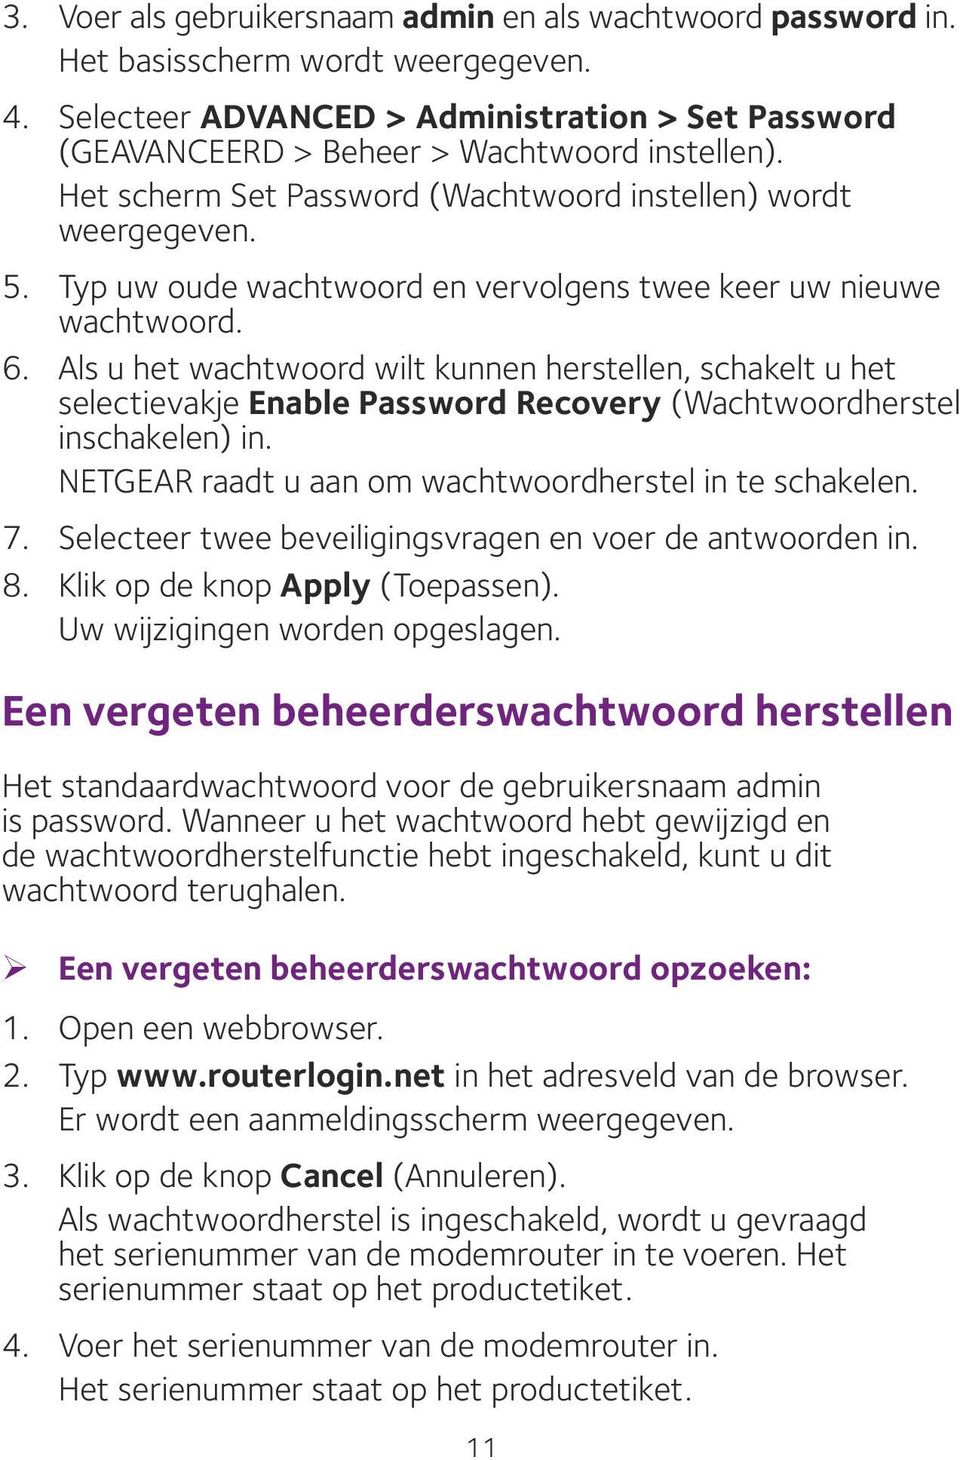 Als u het wachtwoord wilt kunnen herstellen, schakelt u het selectievakje Enable Password Recovery (Wachtwoordherstel inschakelen) in. NETGEAR raadt u aan om wachtwoordherstel in te schakelen. 7.